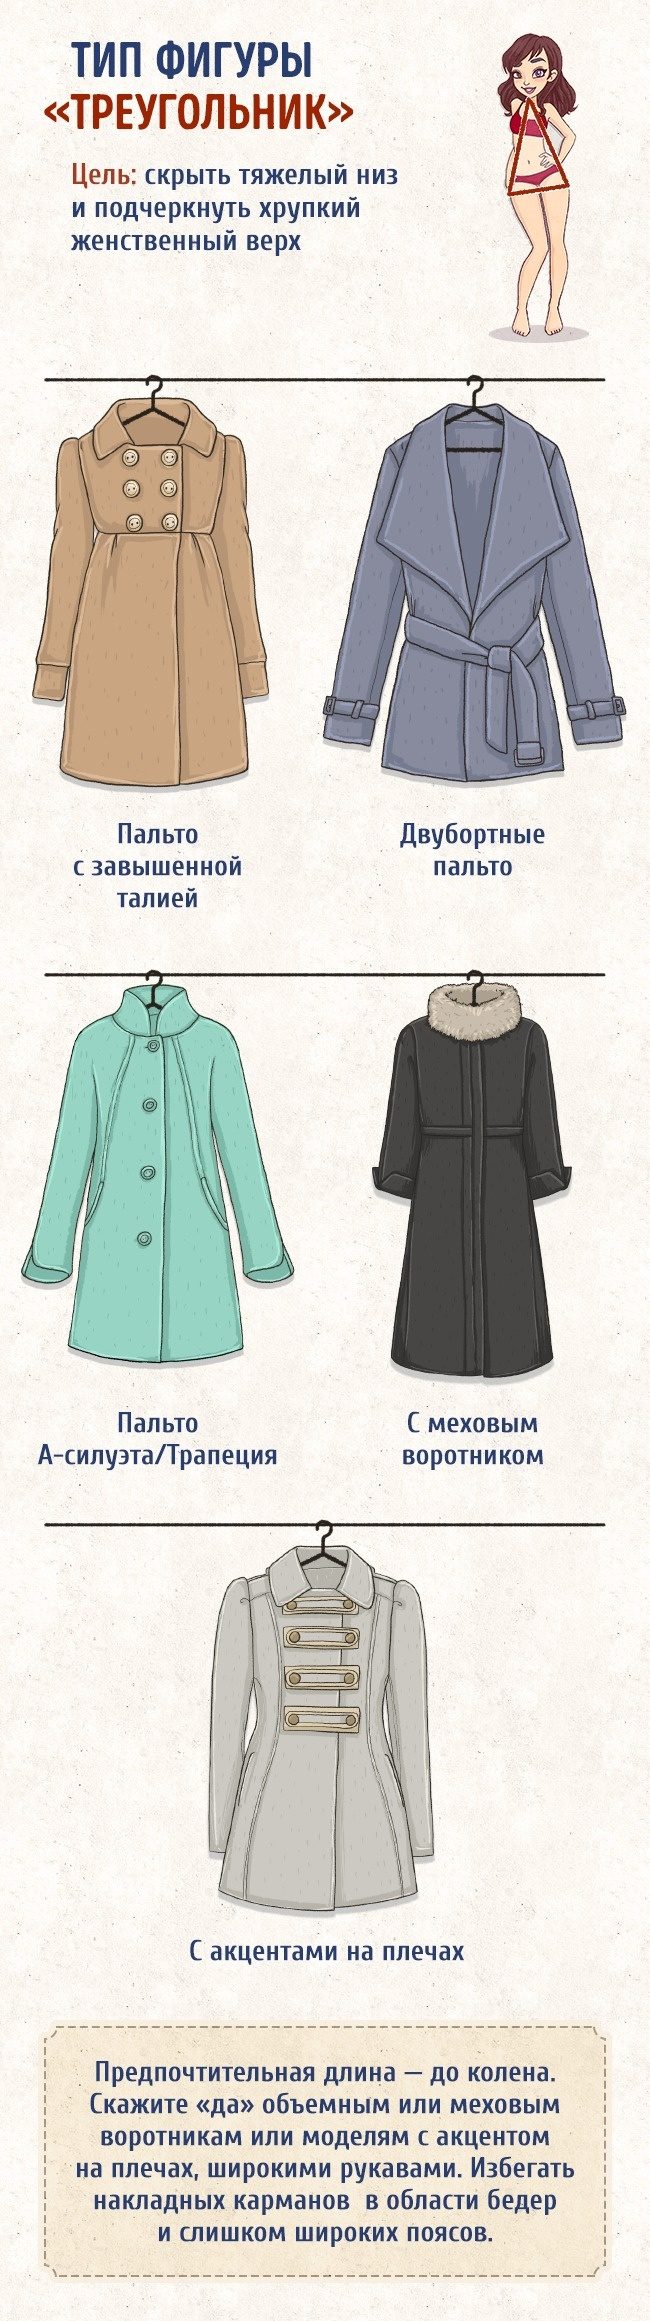 Как выбрать идеальное пальто по типу фигуры